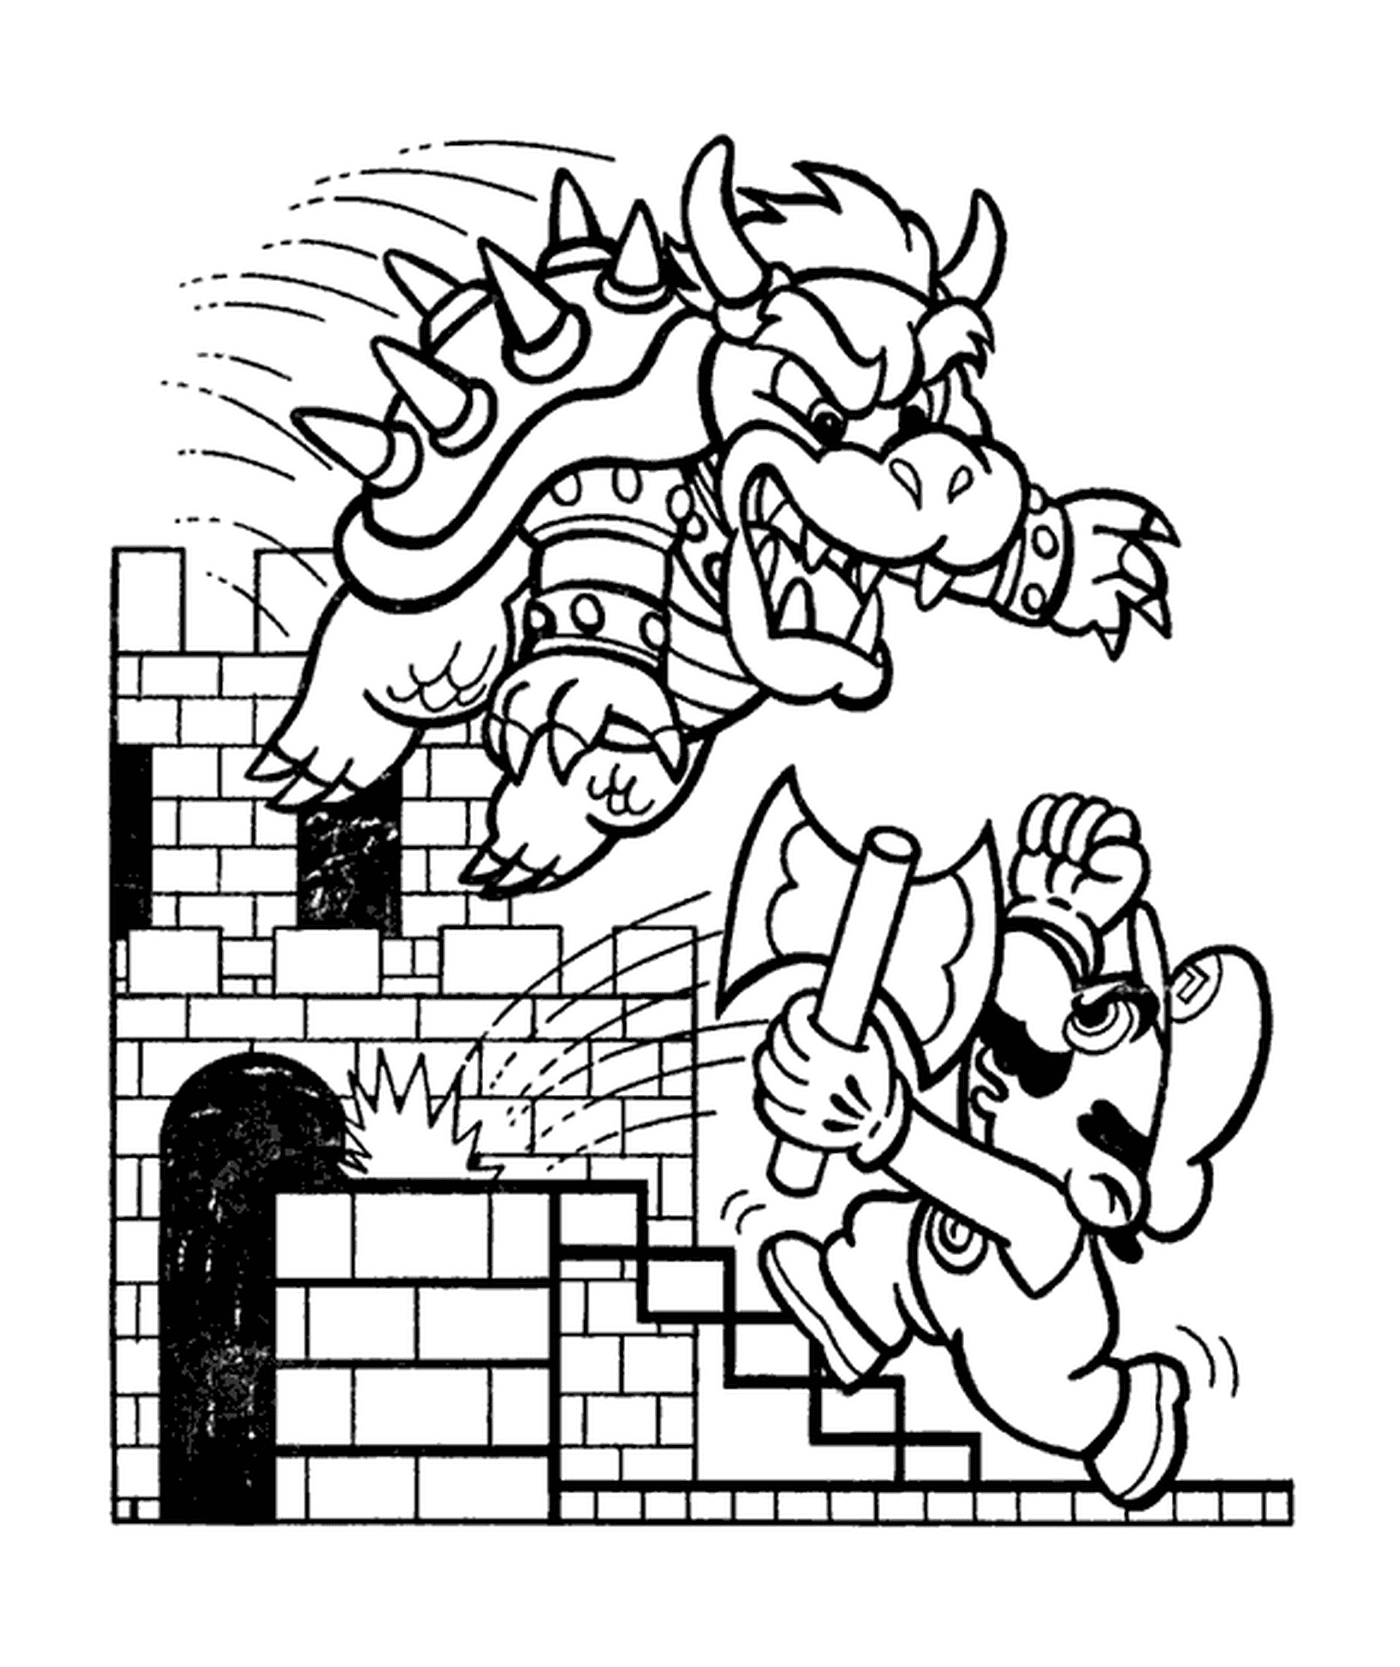  Bowser ataca a Mario con furia 